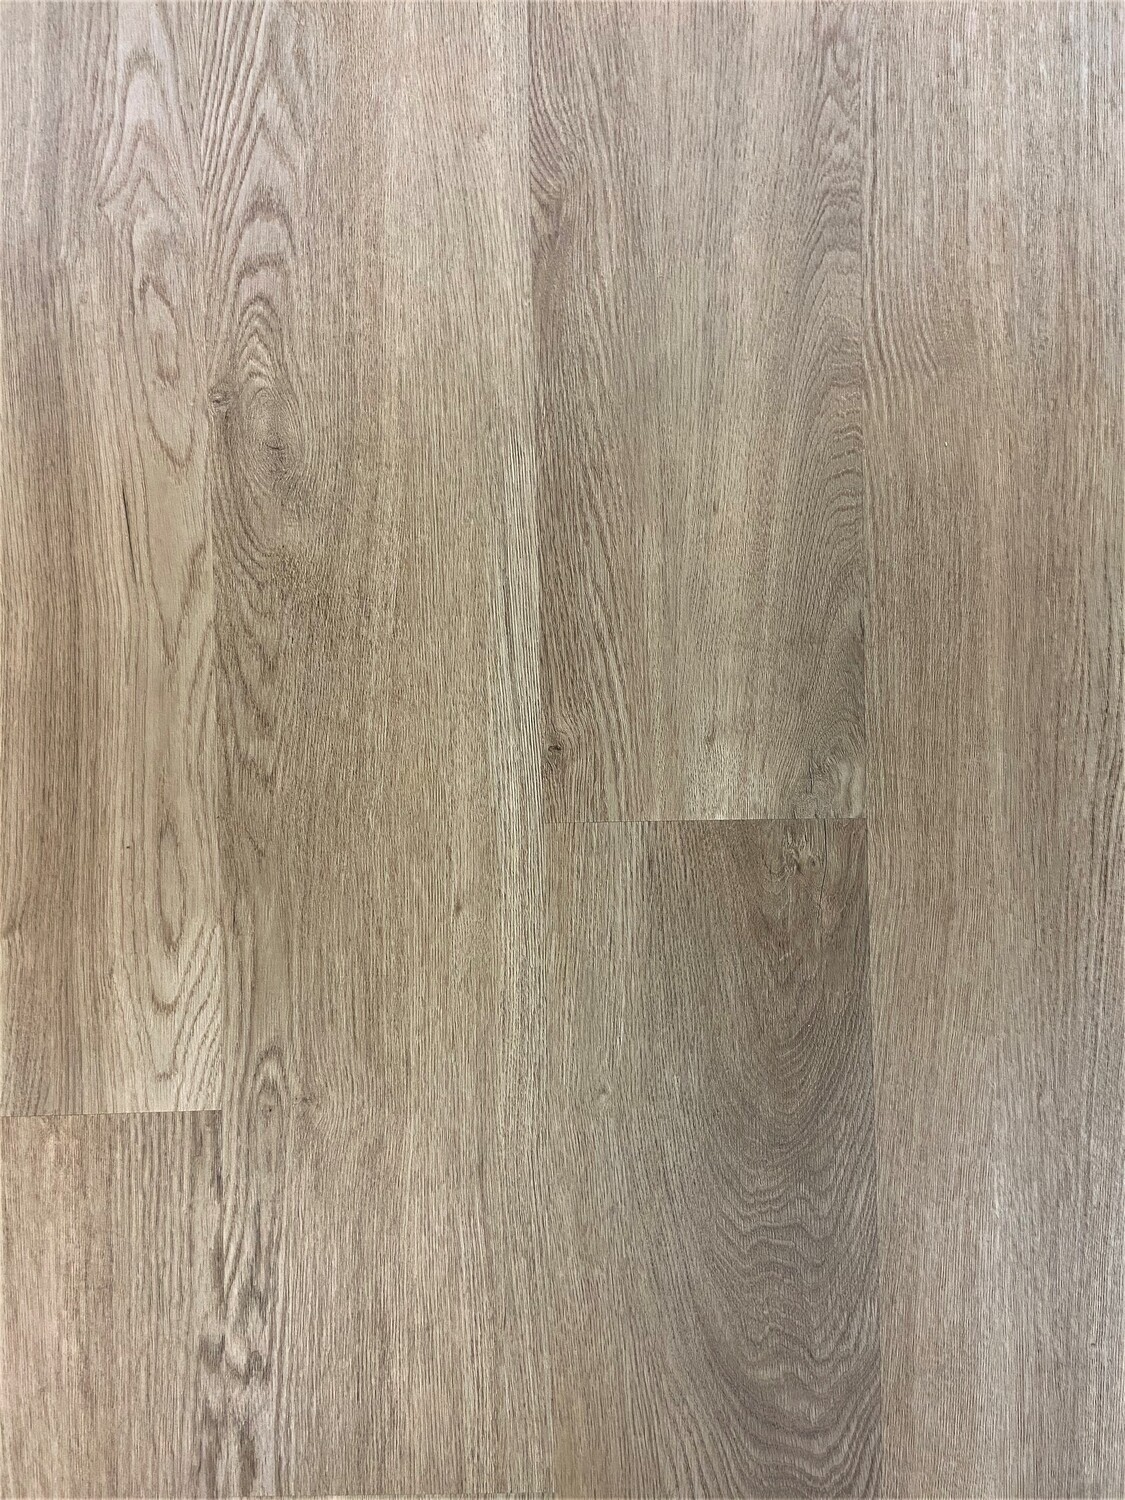 Vinylboden Oak Renaissance Medium mit Trittschall 1mm pro 1m² Stärke 5.2mm x 190mm x 1225mm